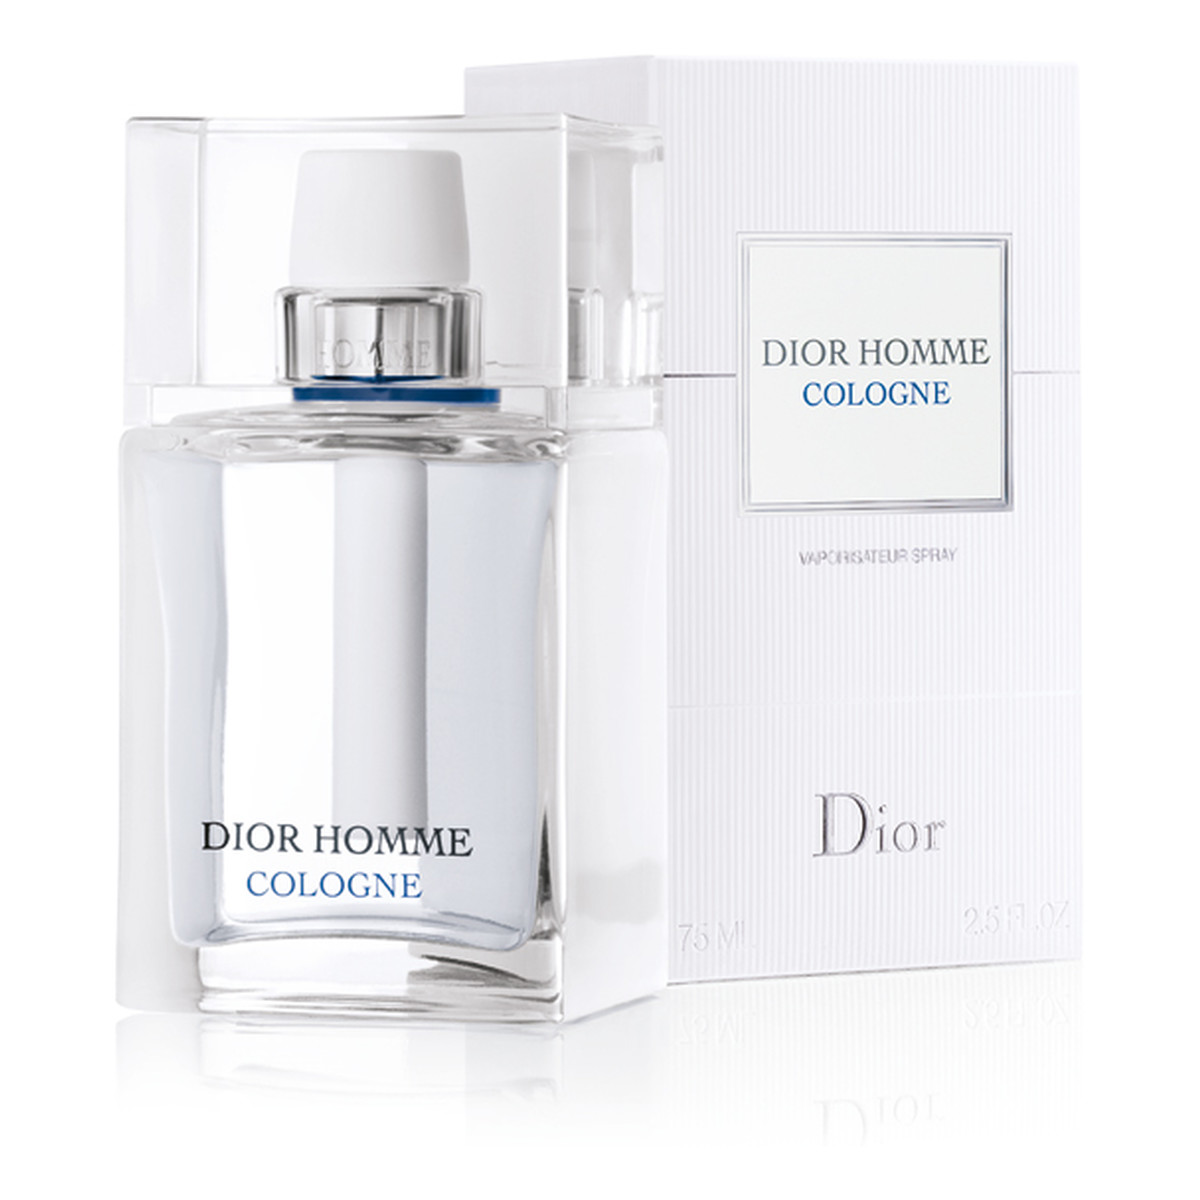 Dior Homme Cologne woda kolońska 75ml